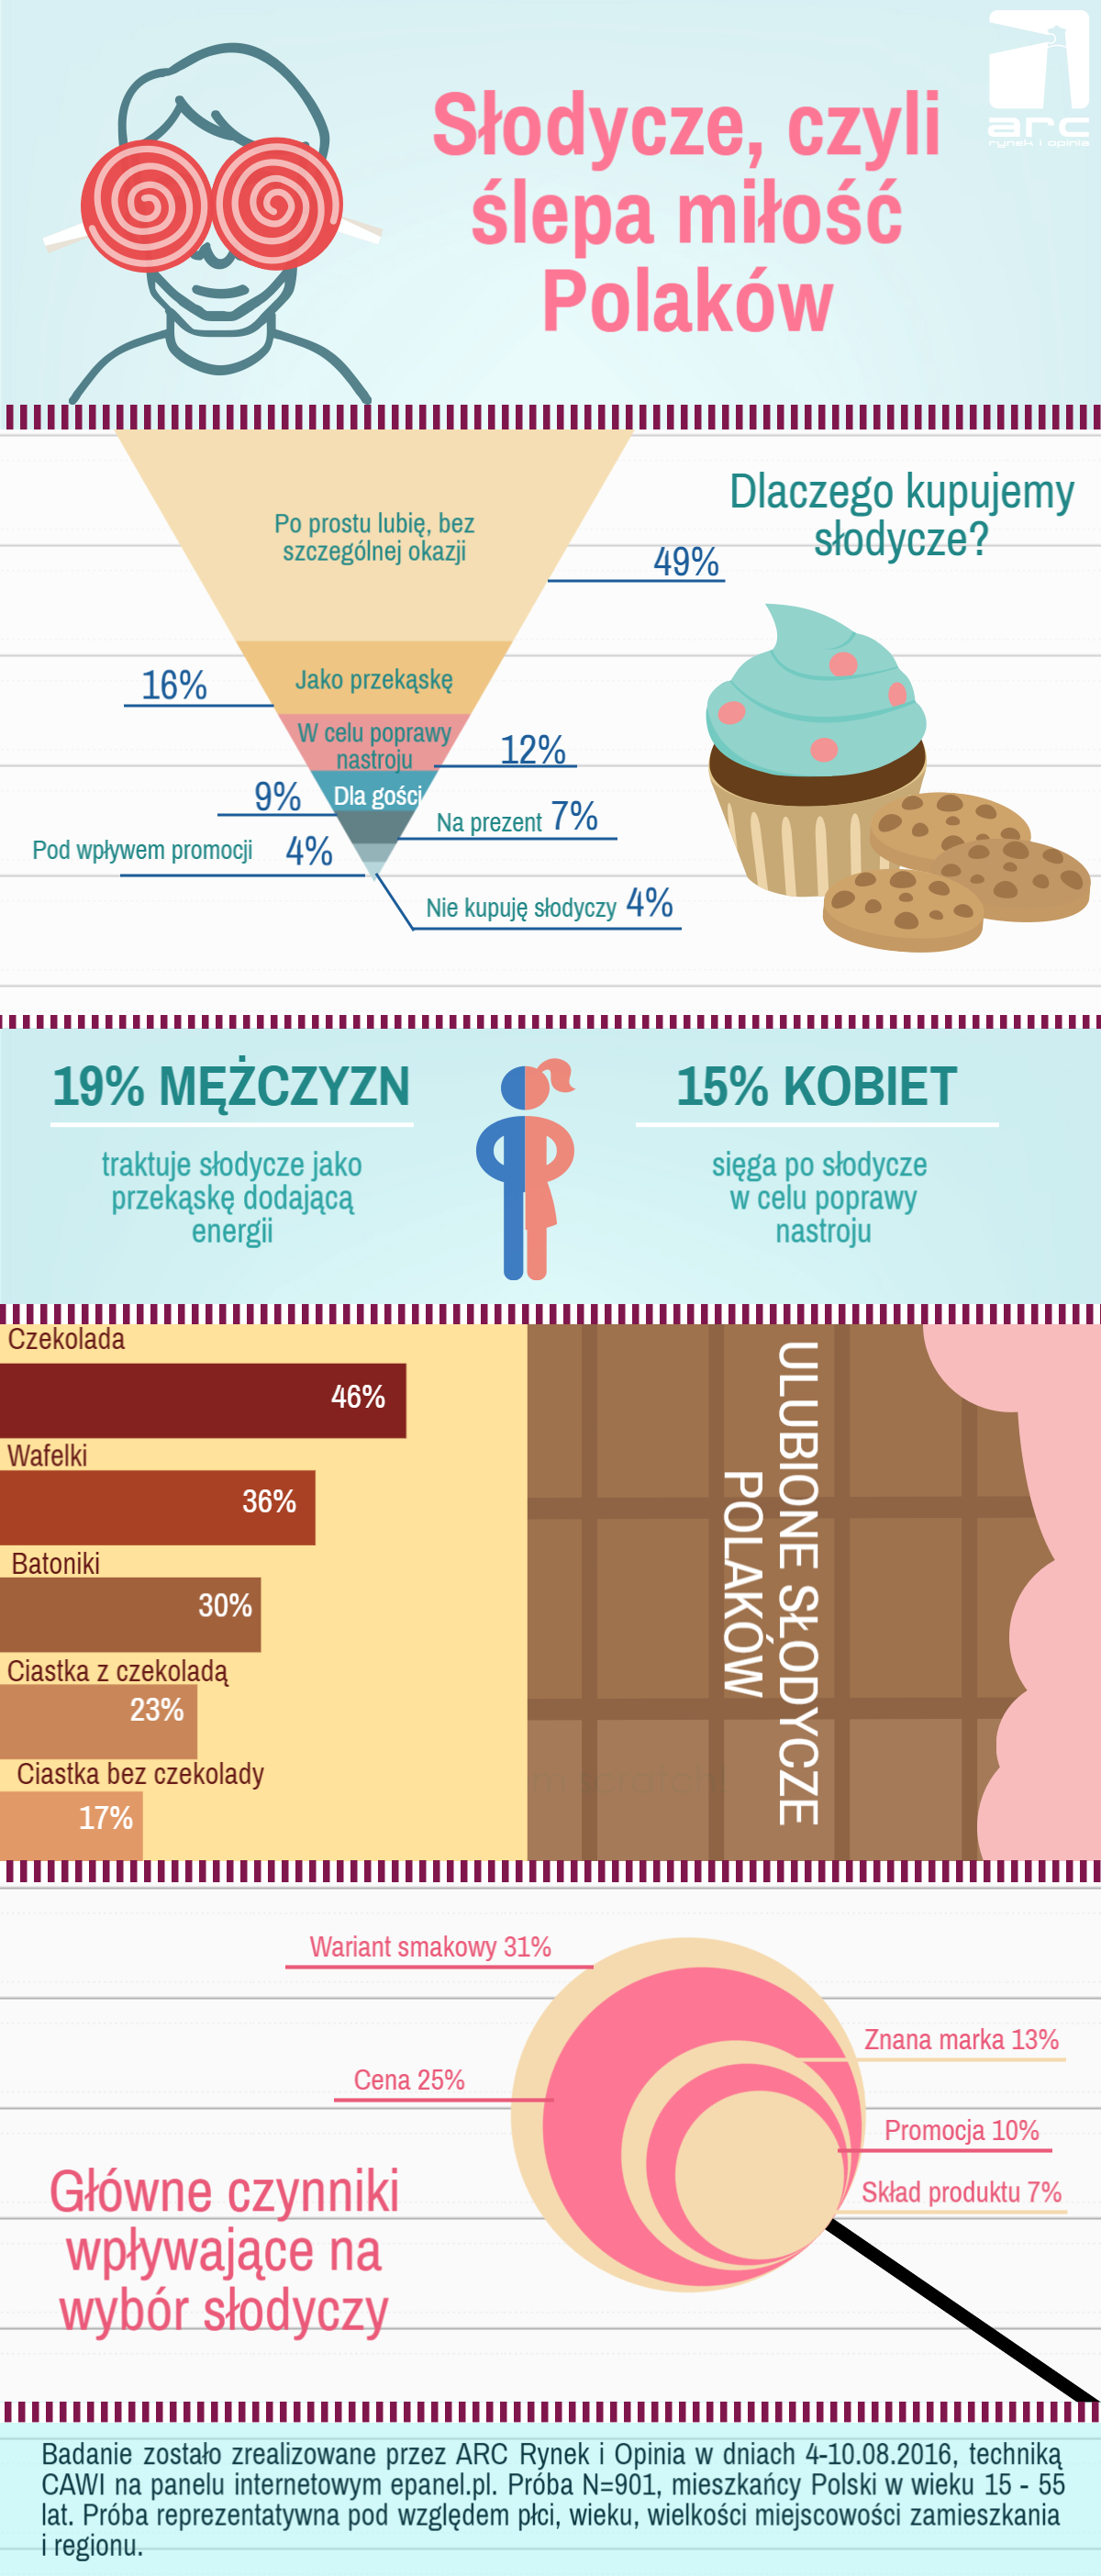 Aż 96% Polaków kupuje słodycze